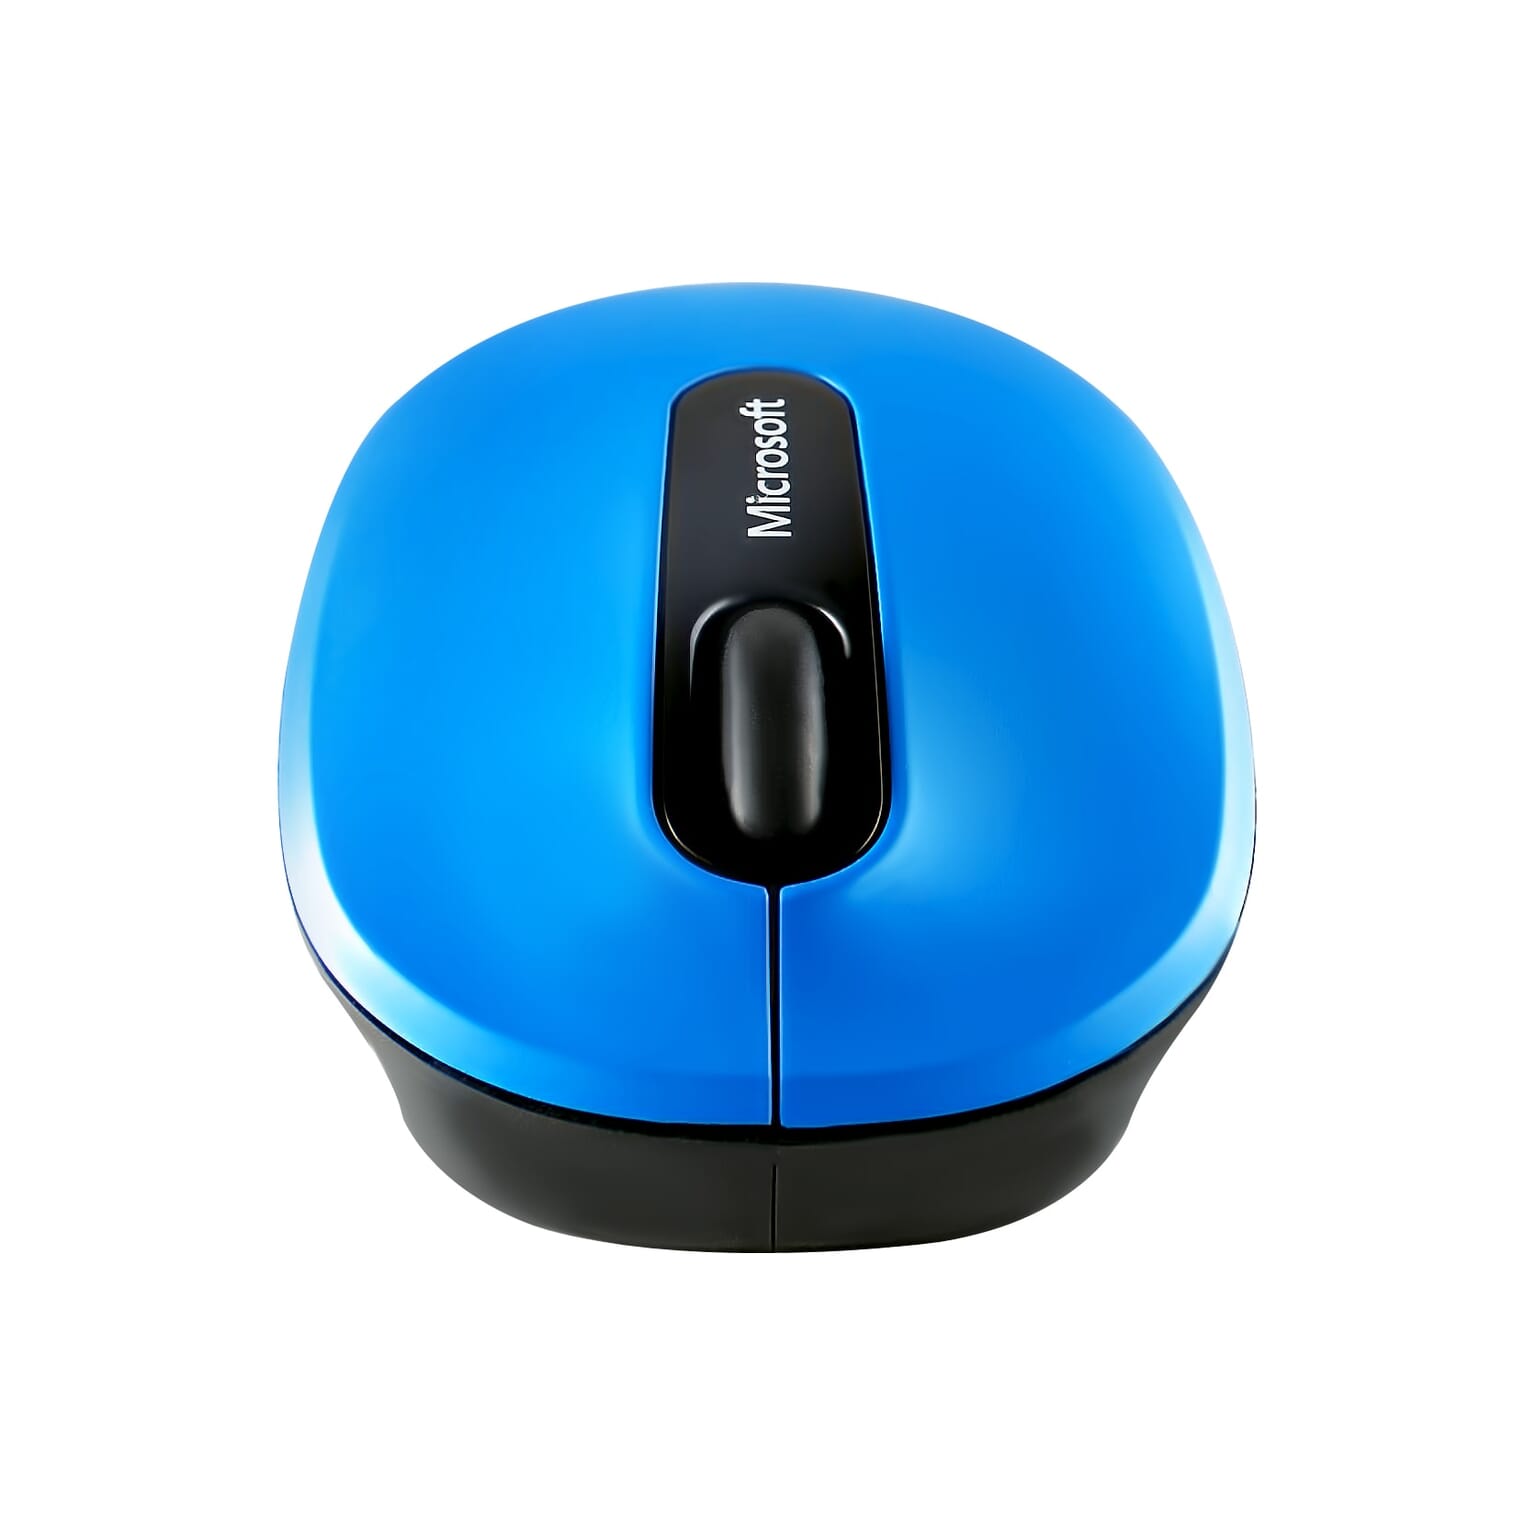 עכבר מחשב בצבע כחול זוהר עם גלגלת שחורה מצולם על רקע לבן